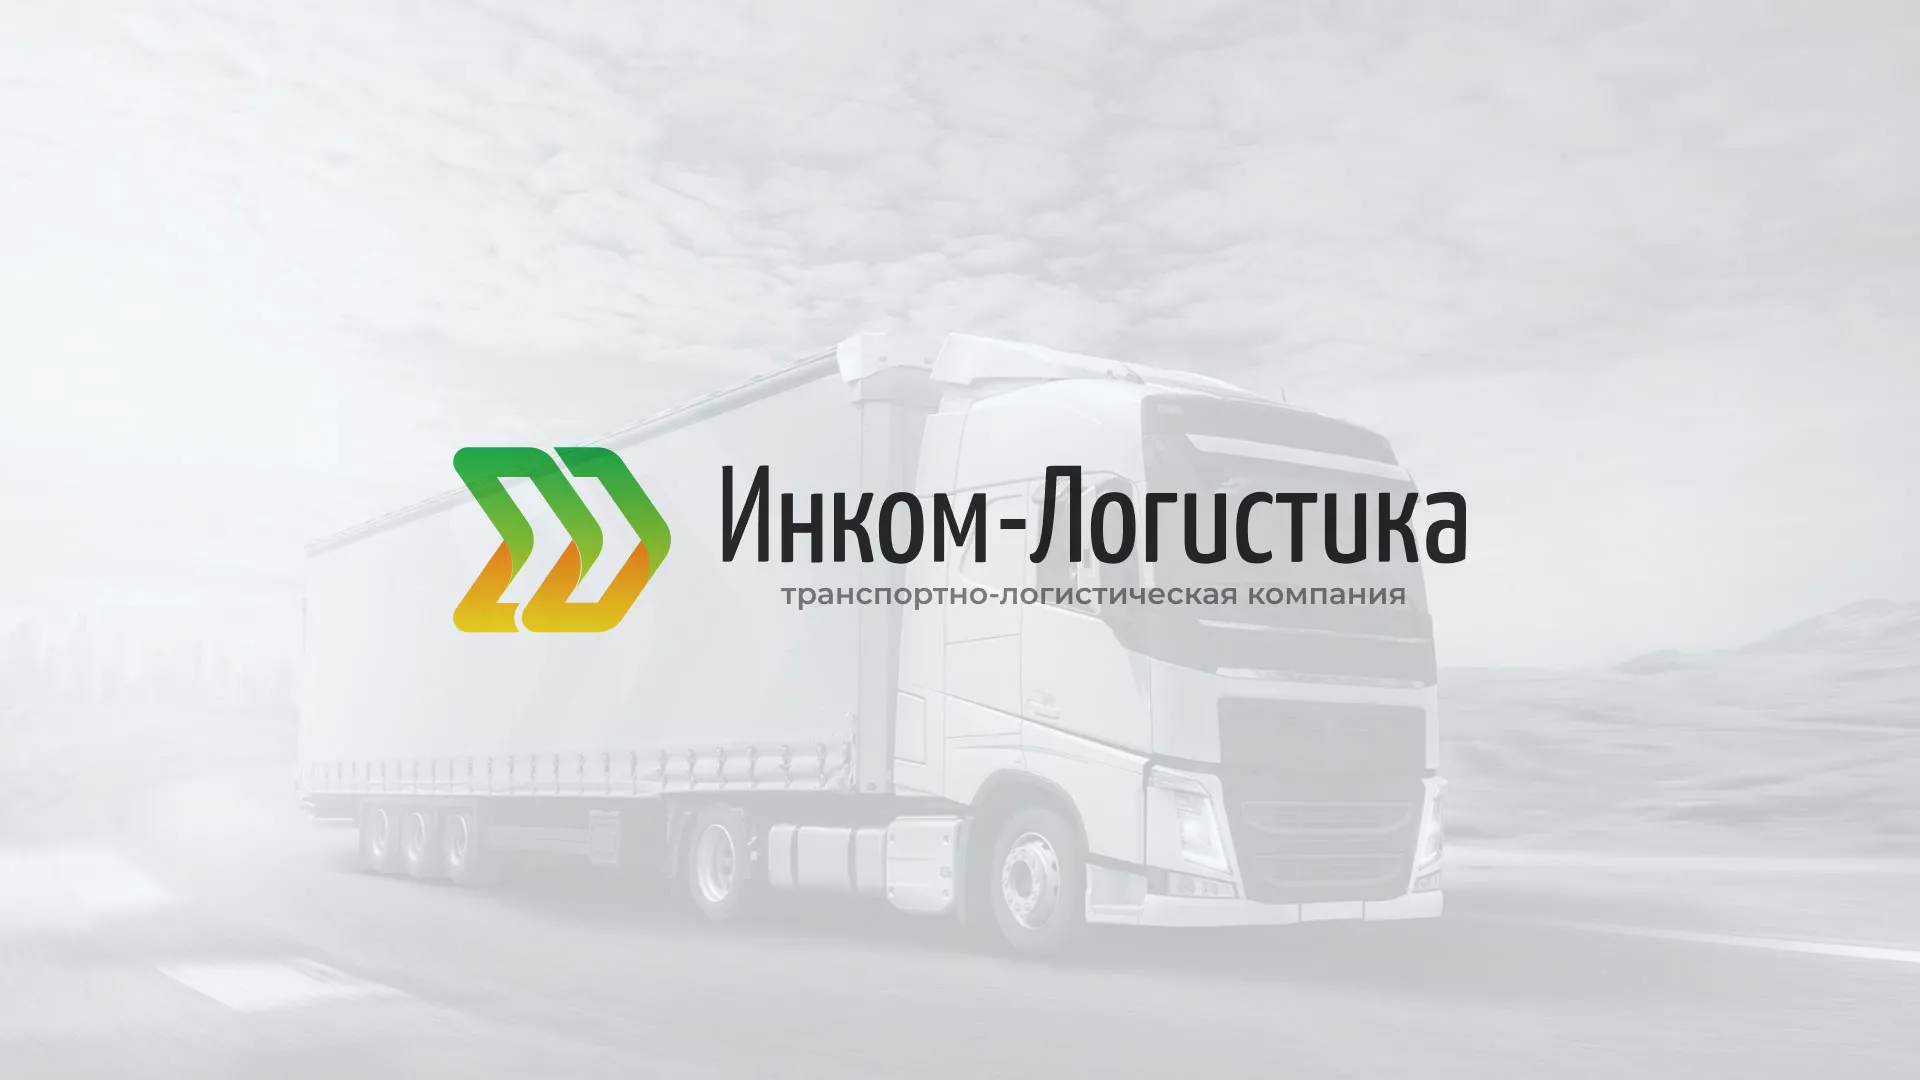 Разработка логотипа и сайта компании «Инком-Логистика» в Бугуруслане